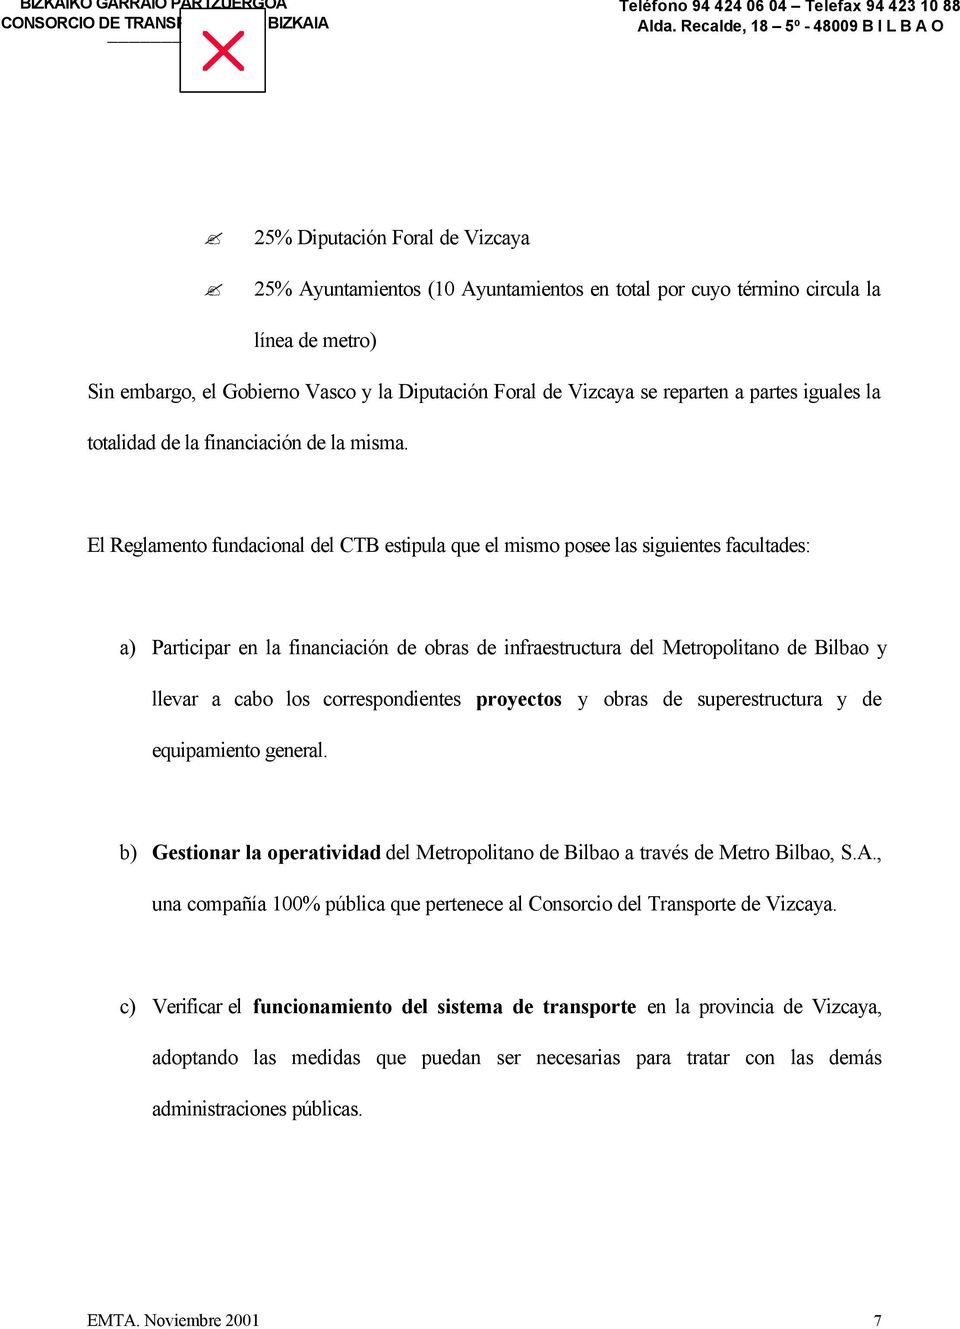 Diputación Foral de Vizcaya se reparten a partes iguales la totalidad de la financiación de la misma.